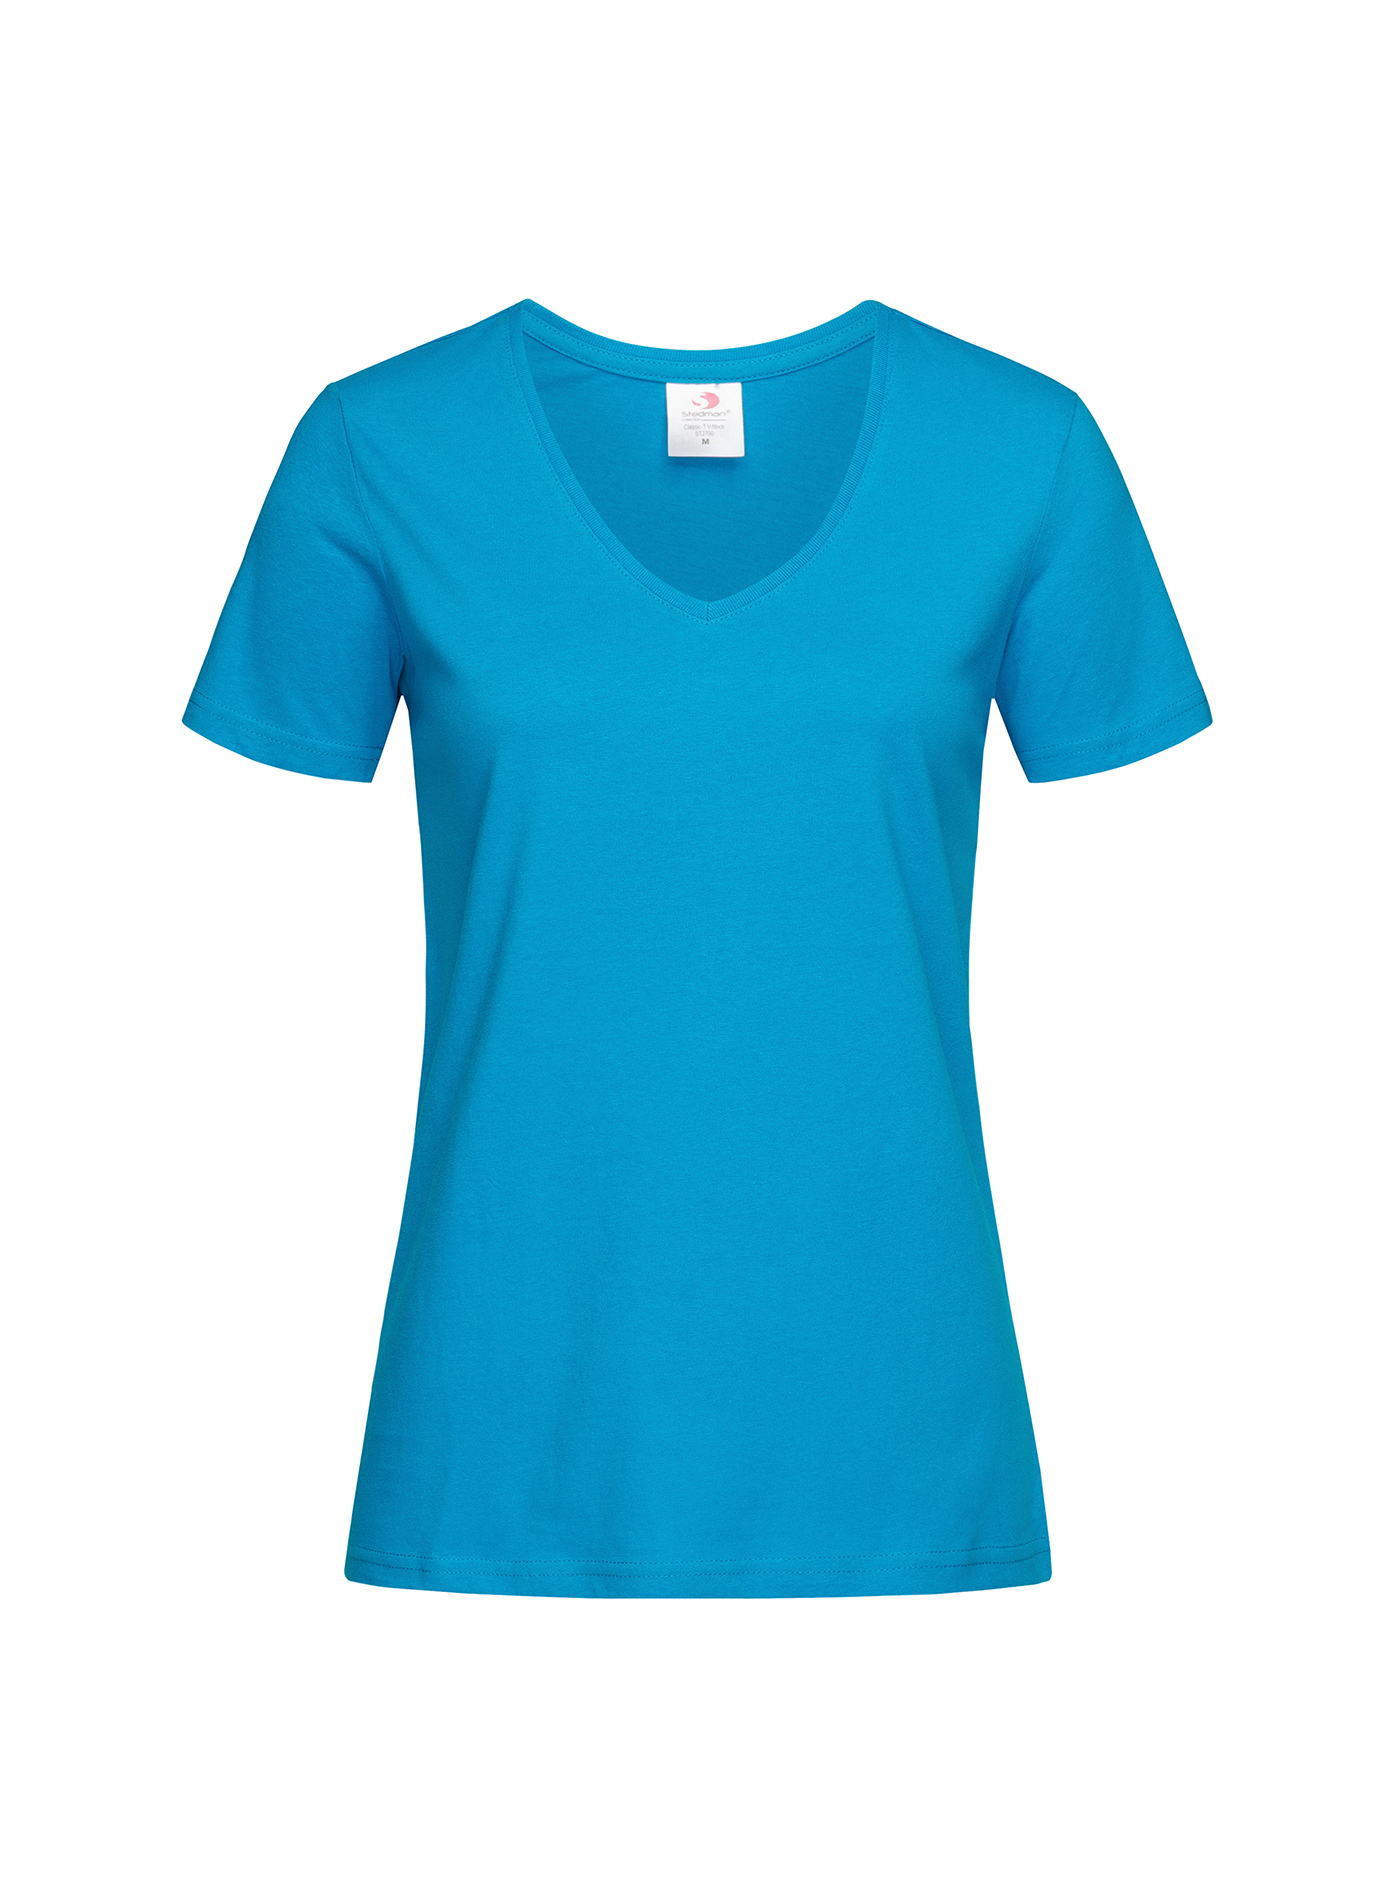 Dámské tričko s V-výstřihem Stedman - Modrá XL